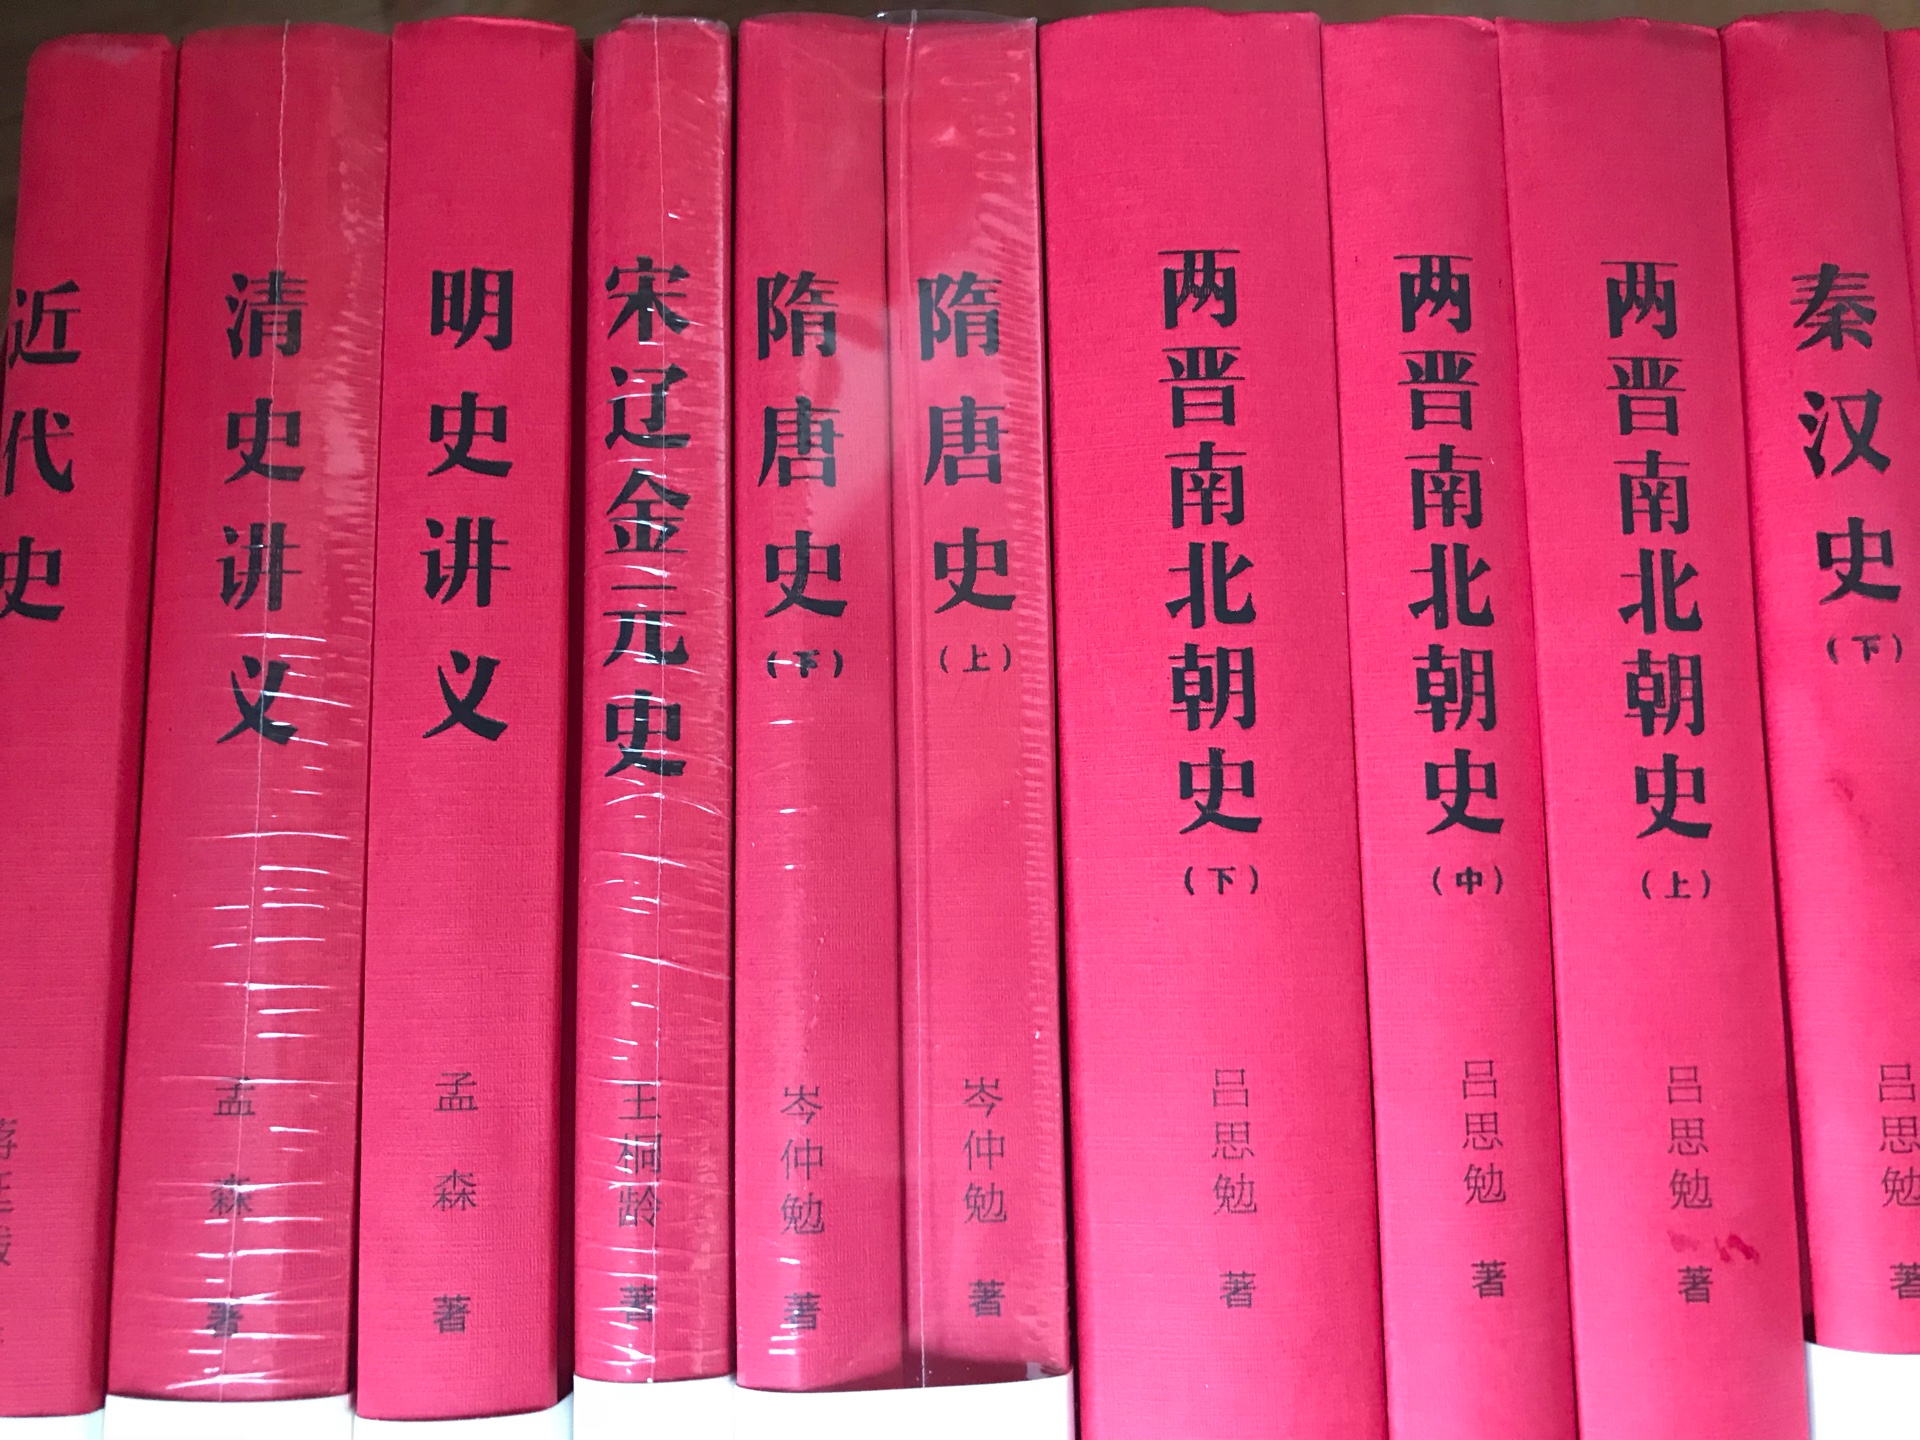 本打算购买上海人民出版社的，但是绝版了，买不到了，所以遇着打折，买了这套，印刷纸质都还是不错的，一百六十五入手，超值！